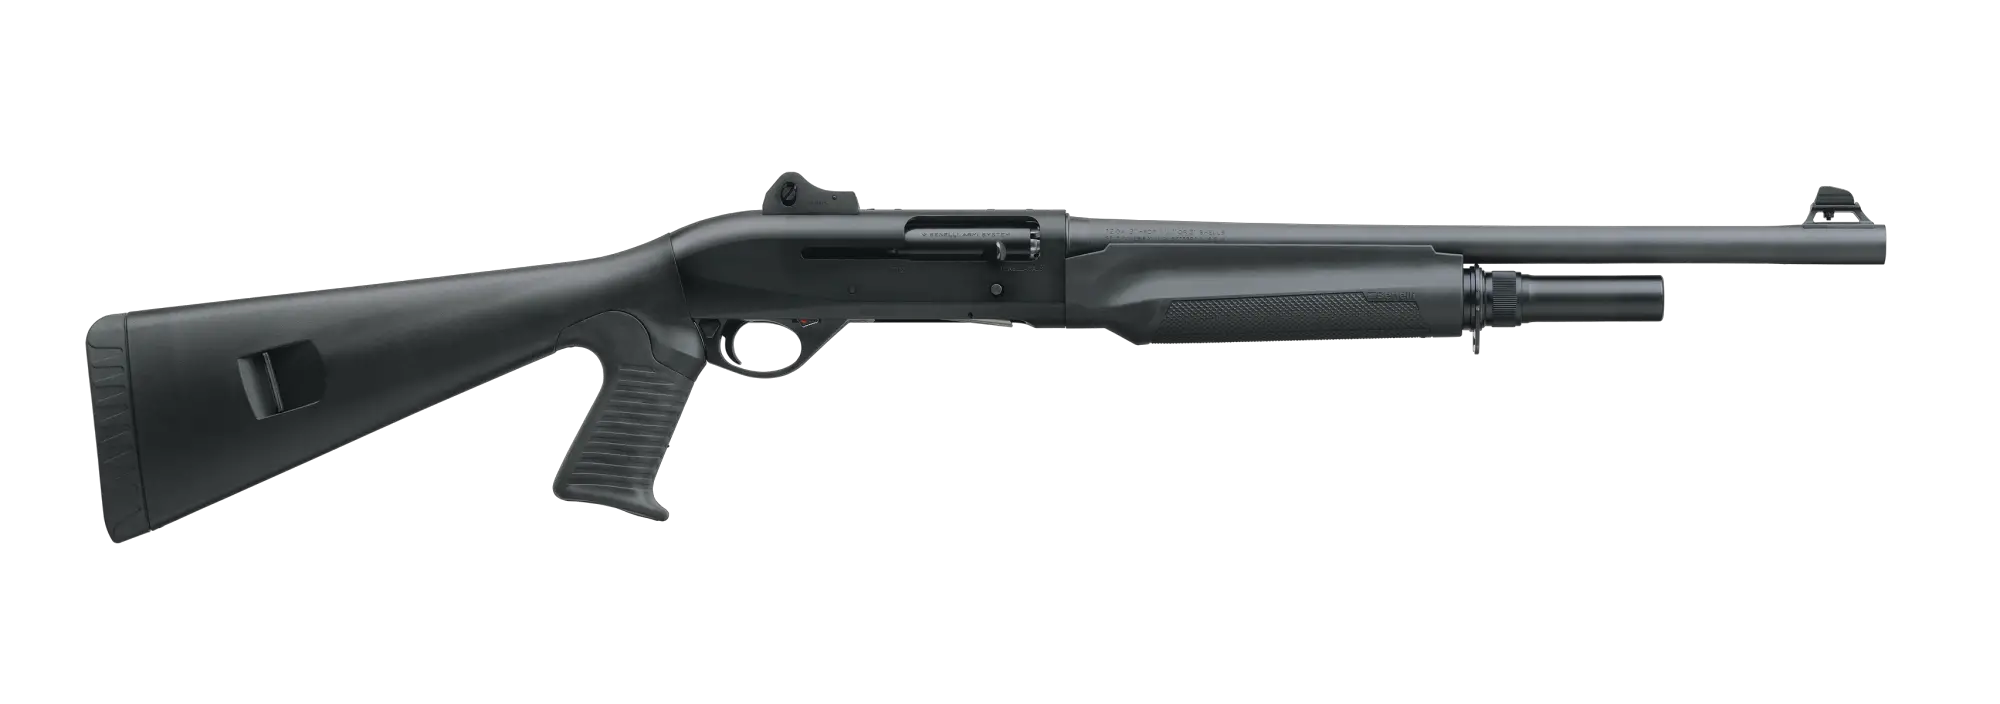 m2-tactical-shotgun-pistol-12-gauge